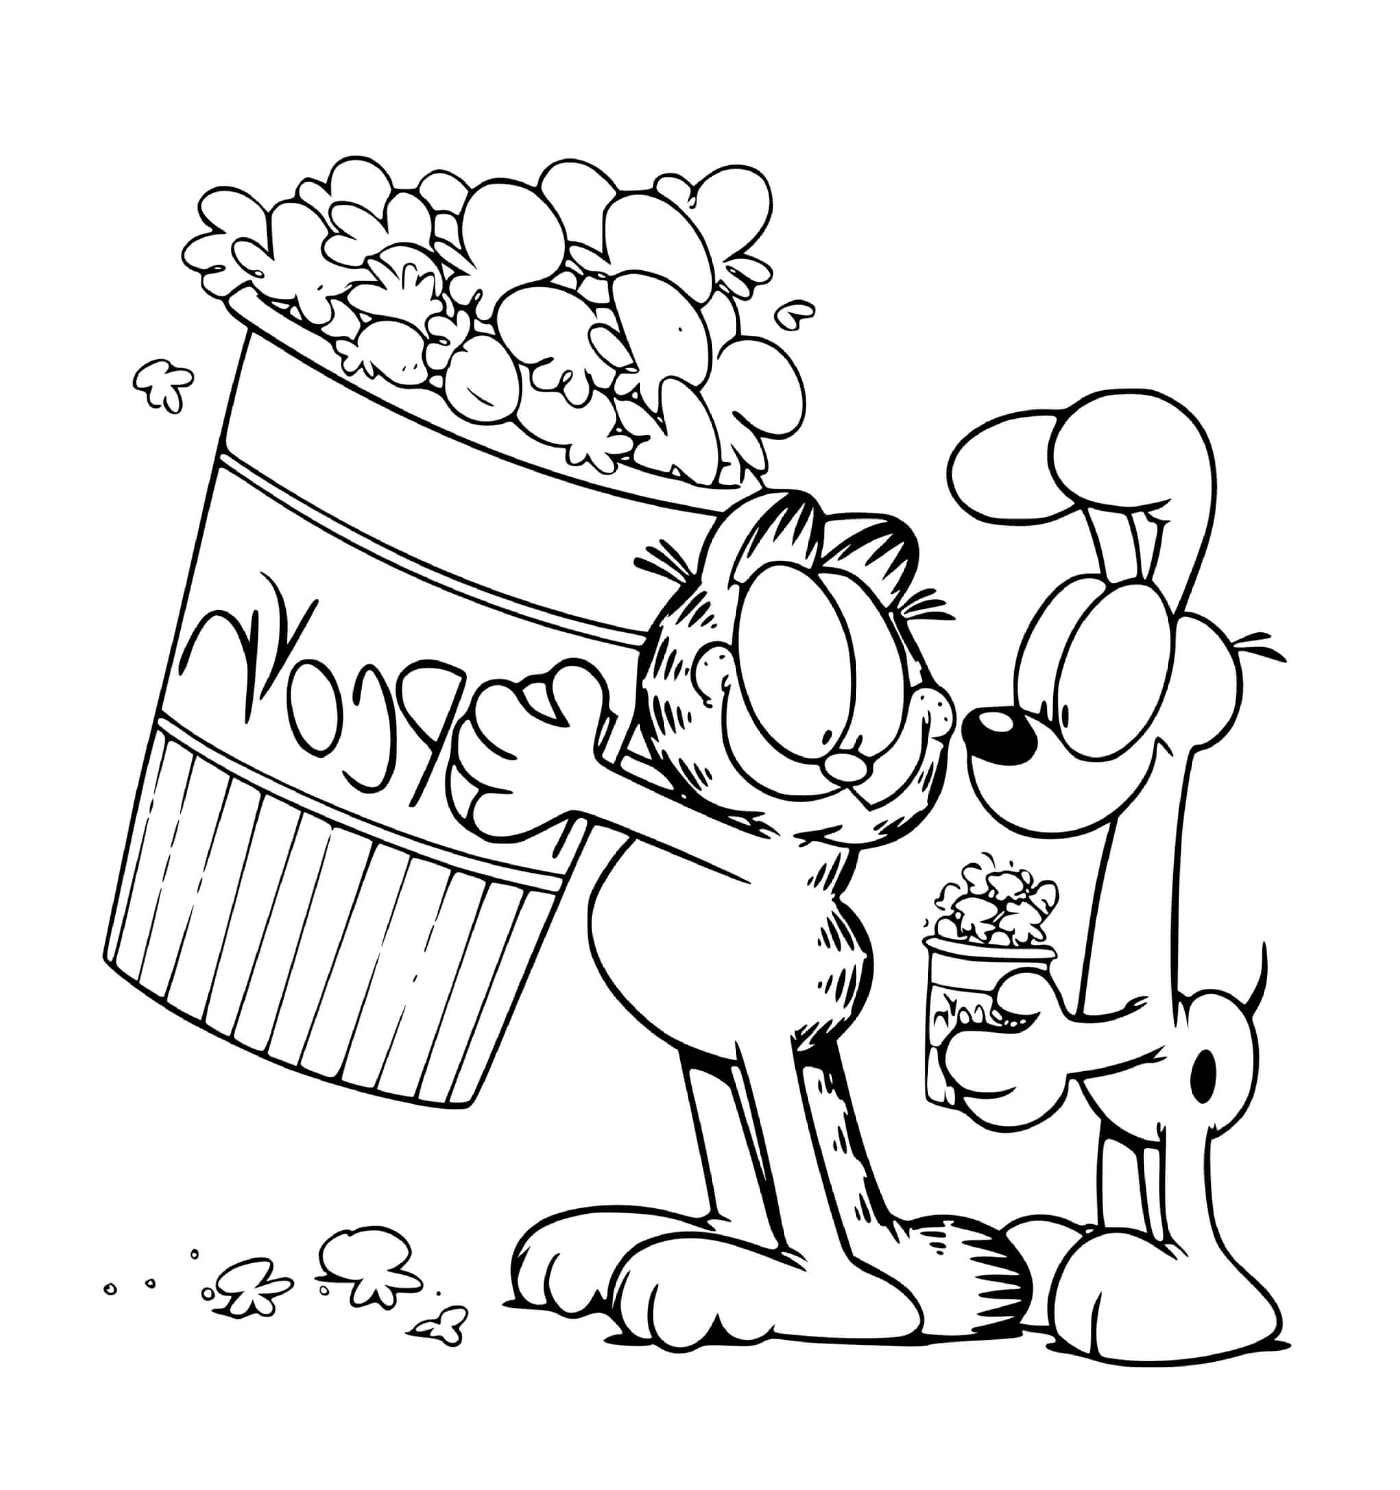  Garfield e Odie compartilham pipoca 